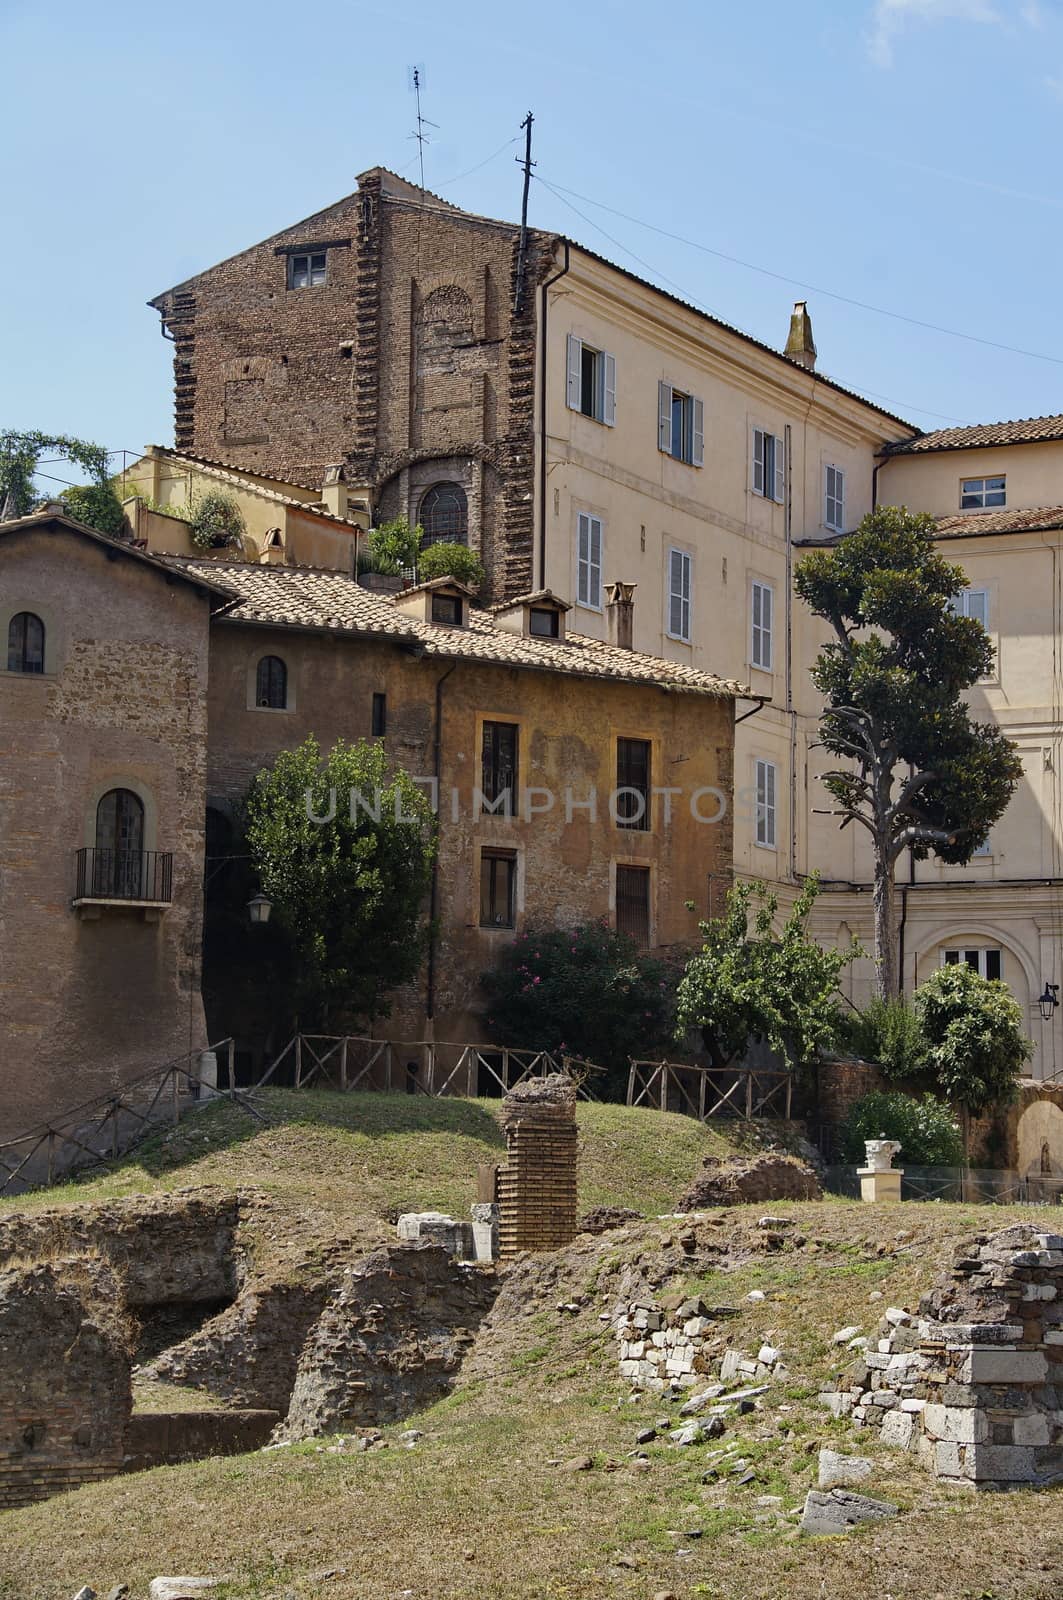 Photo of Santa Rita da Cascia in Campitelli, view from Via del Foro Piscario, Rome, Italy